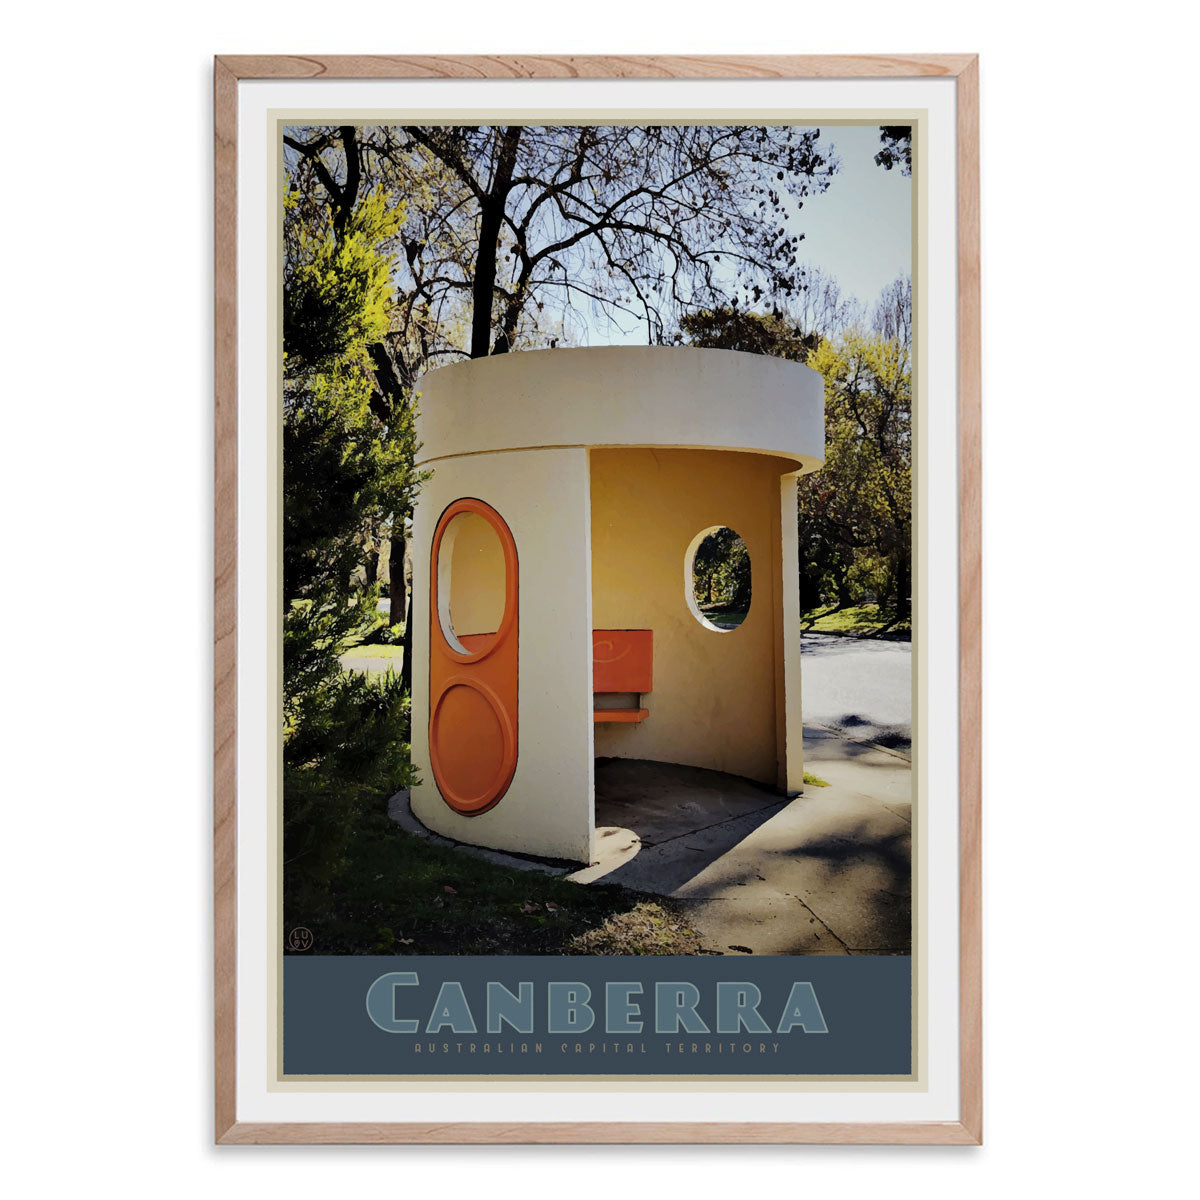 Canberra busstop oak framed vintage travel poster. Original design by Places we luv